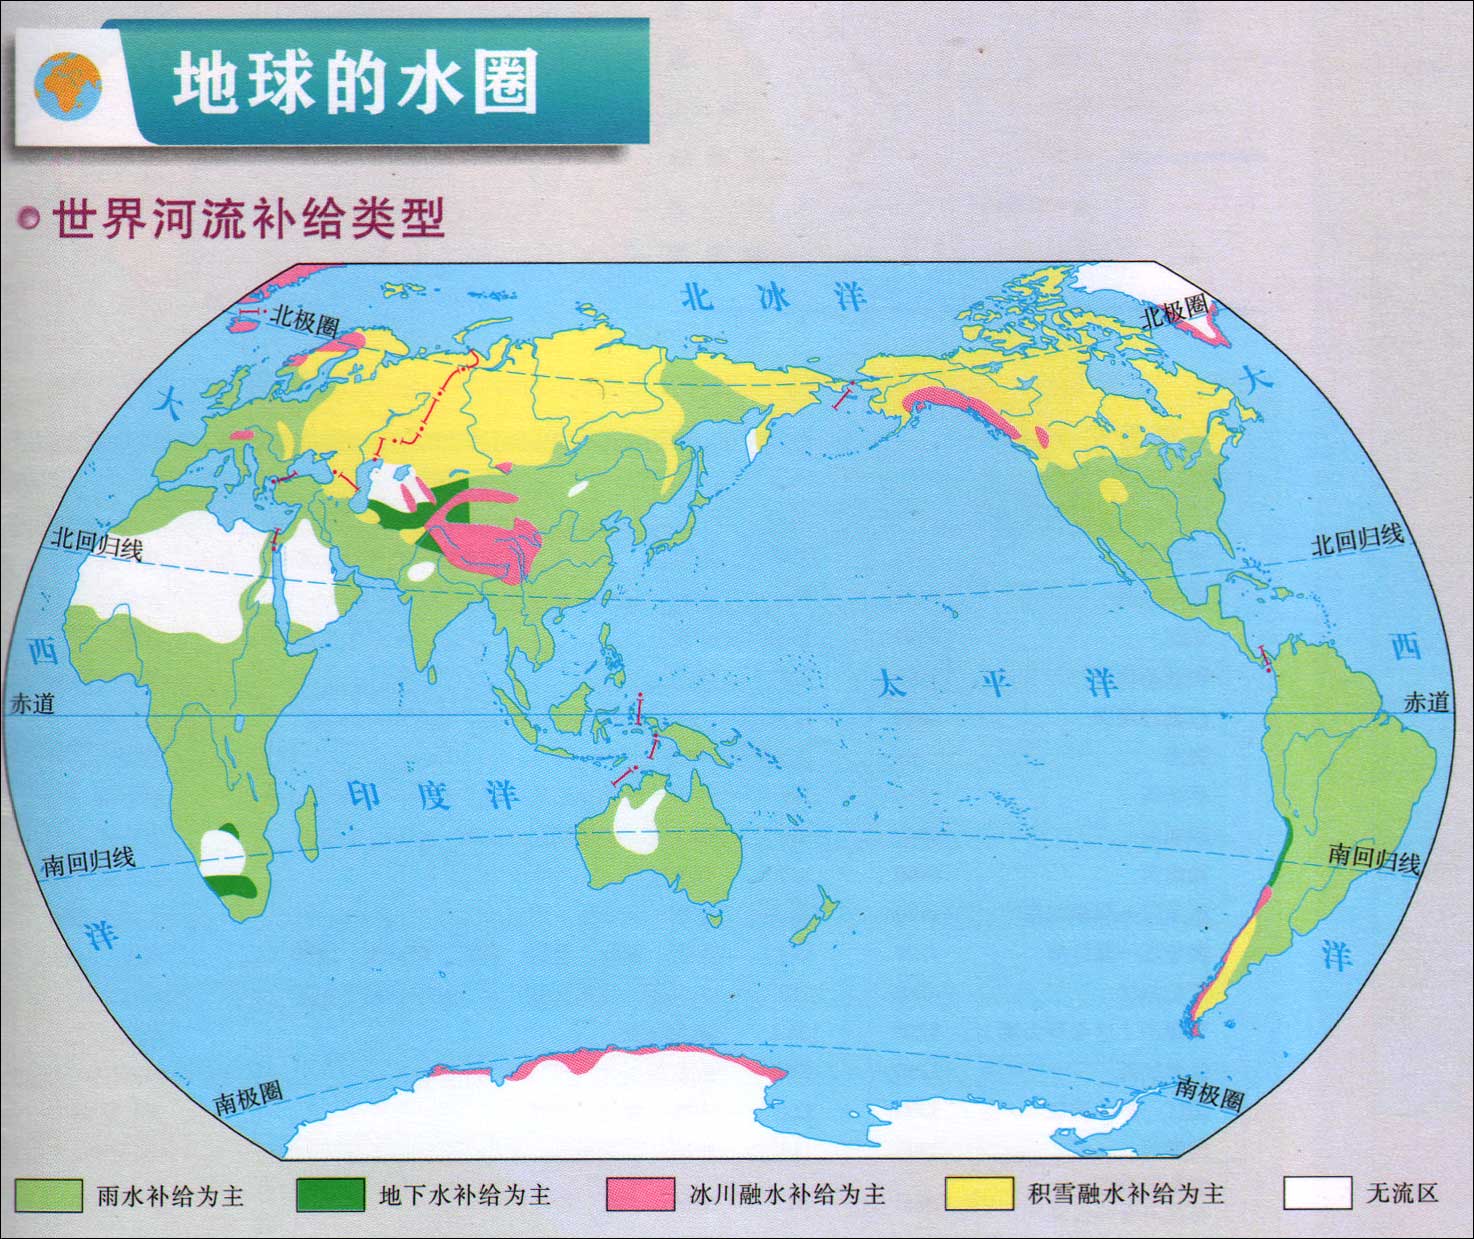 世界河流补给类型示意图_世界地理地图查询图片